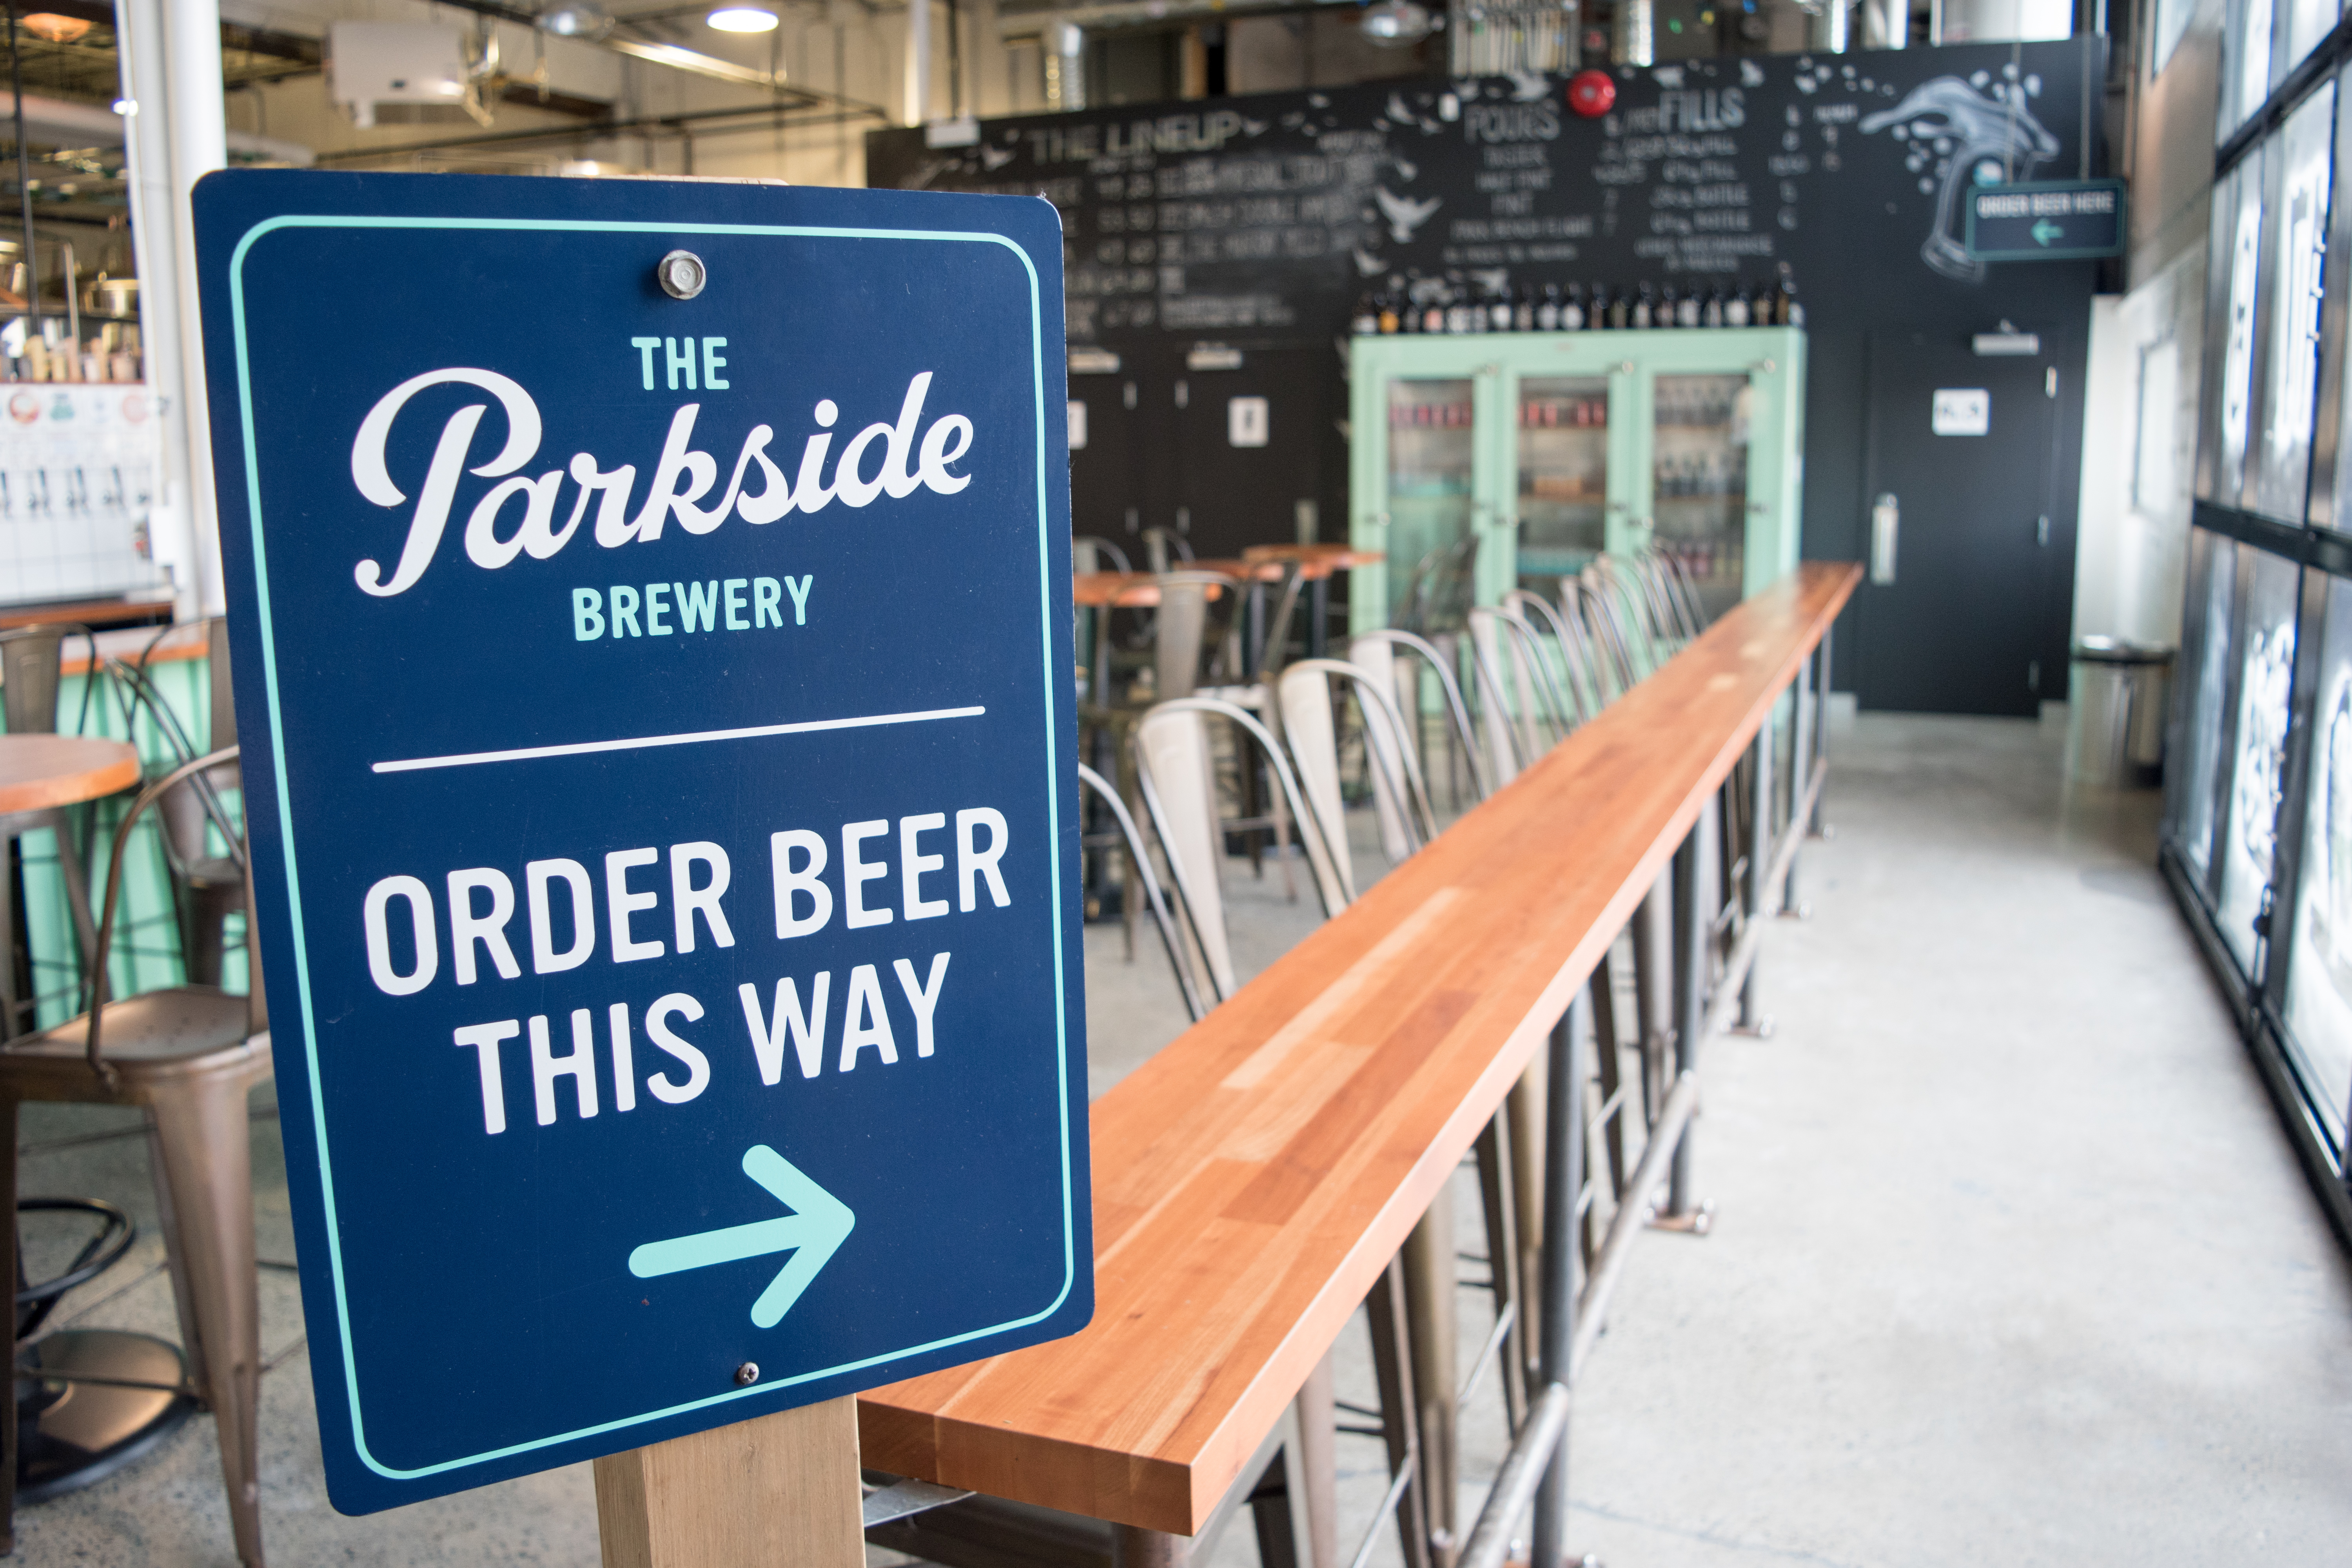 Parkside brewery tasting room